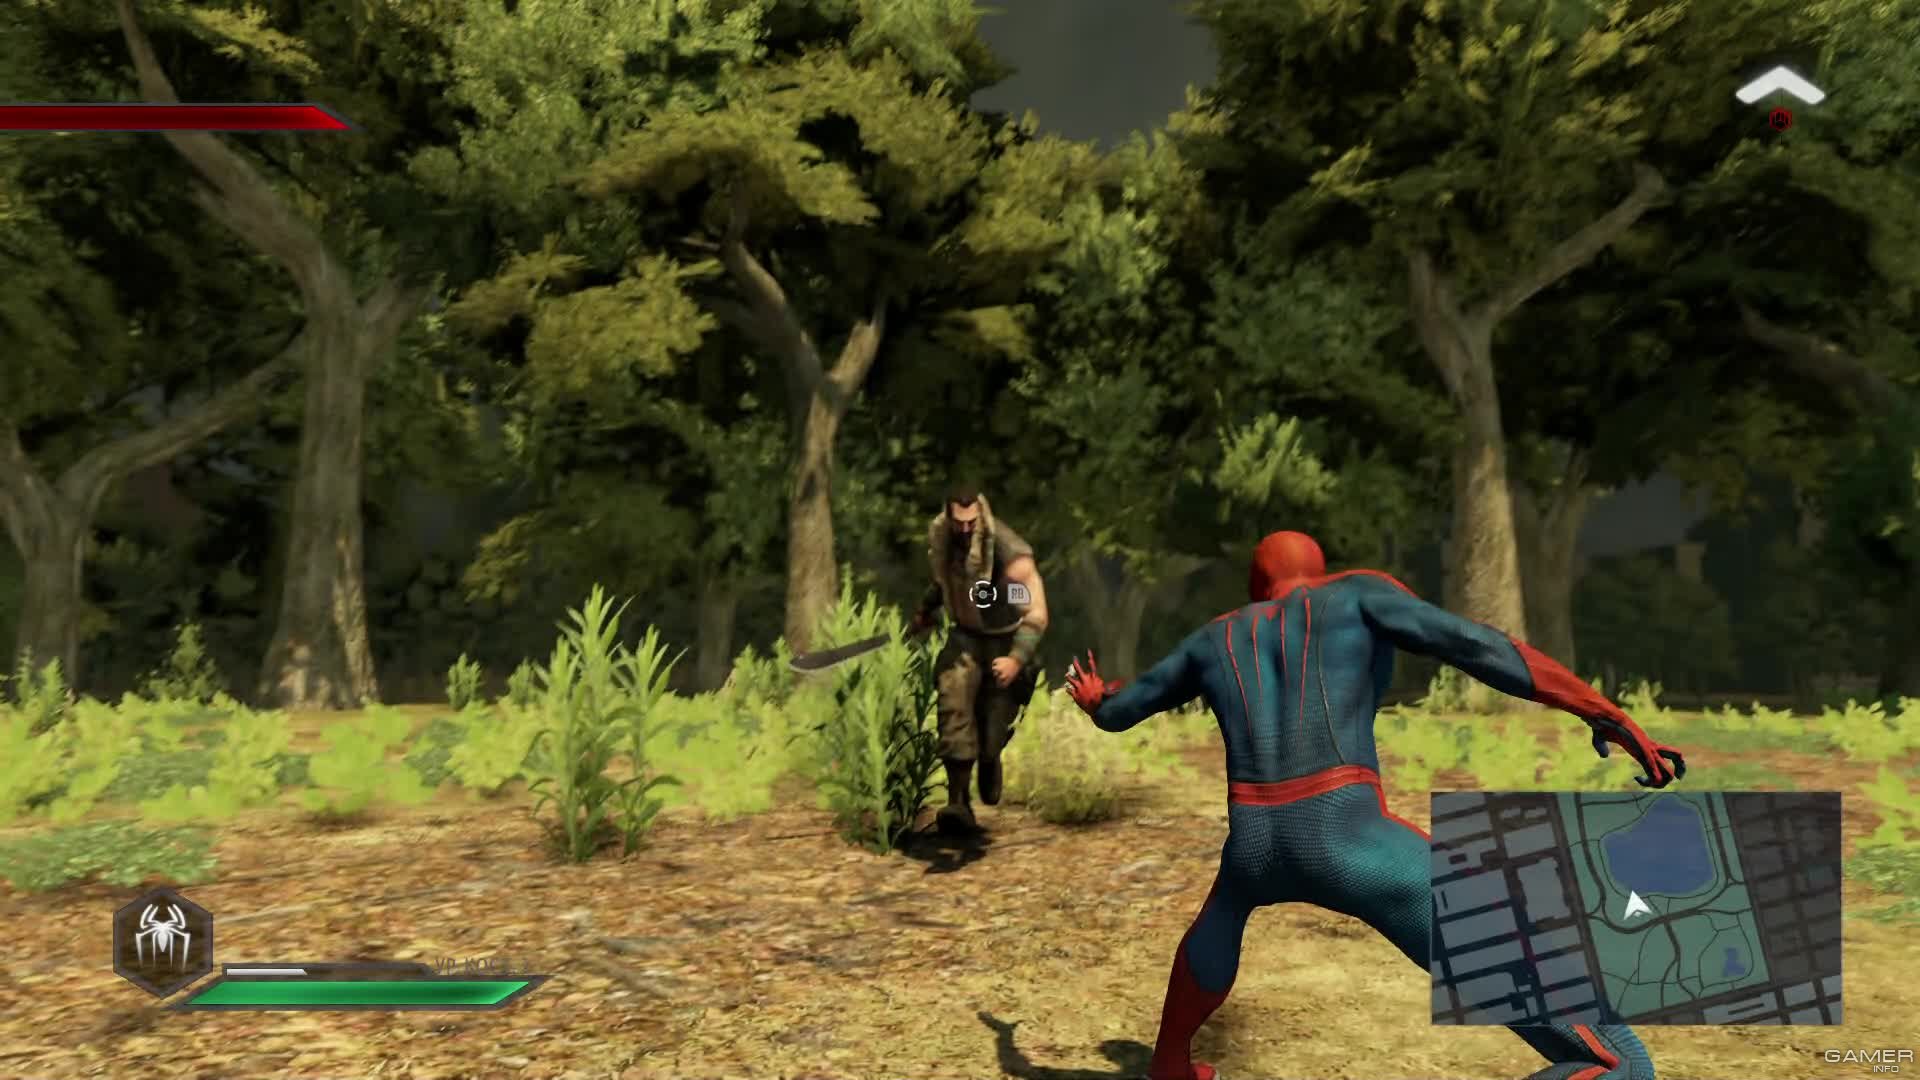 The Amazing Spider-Man 2 (2014 video game), Spider-Man Wiki